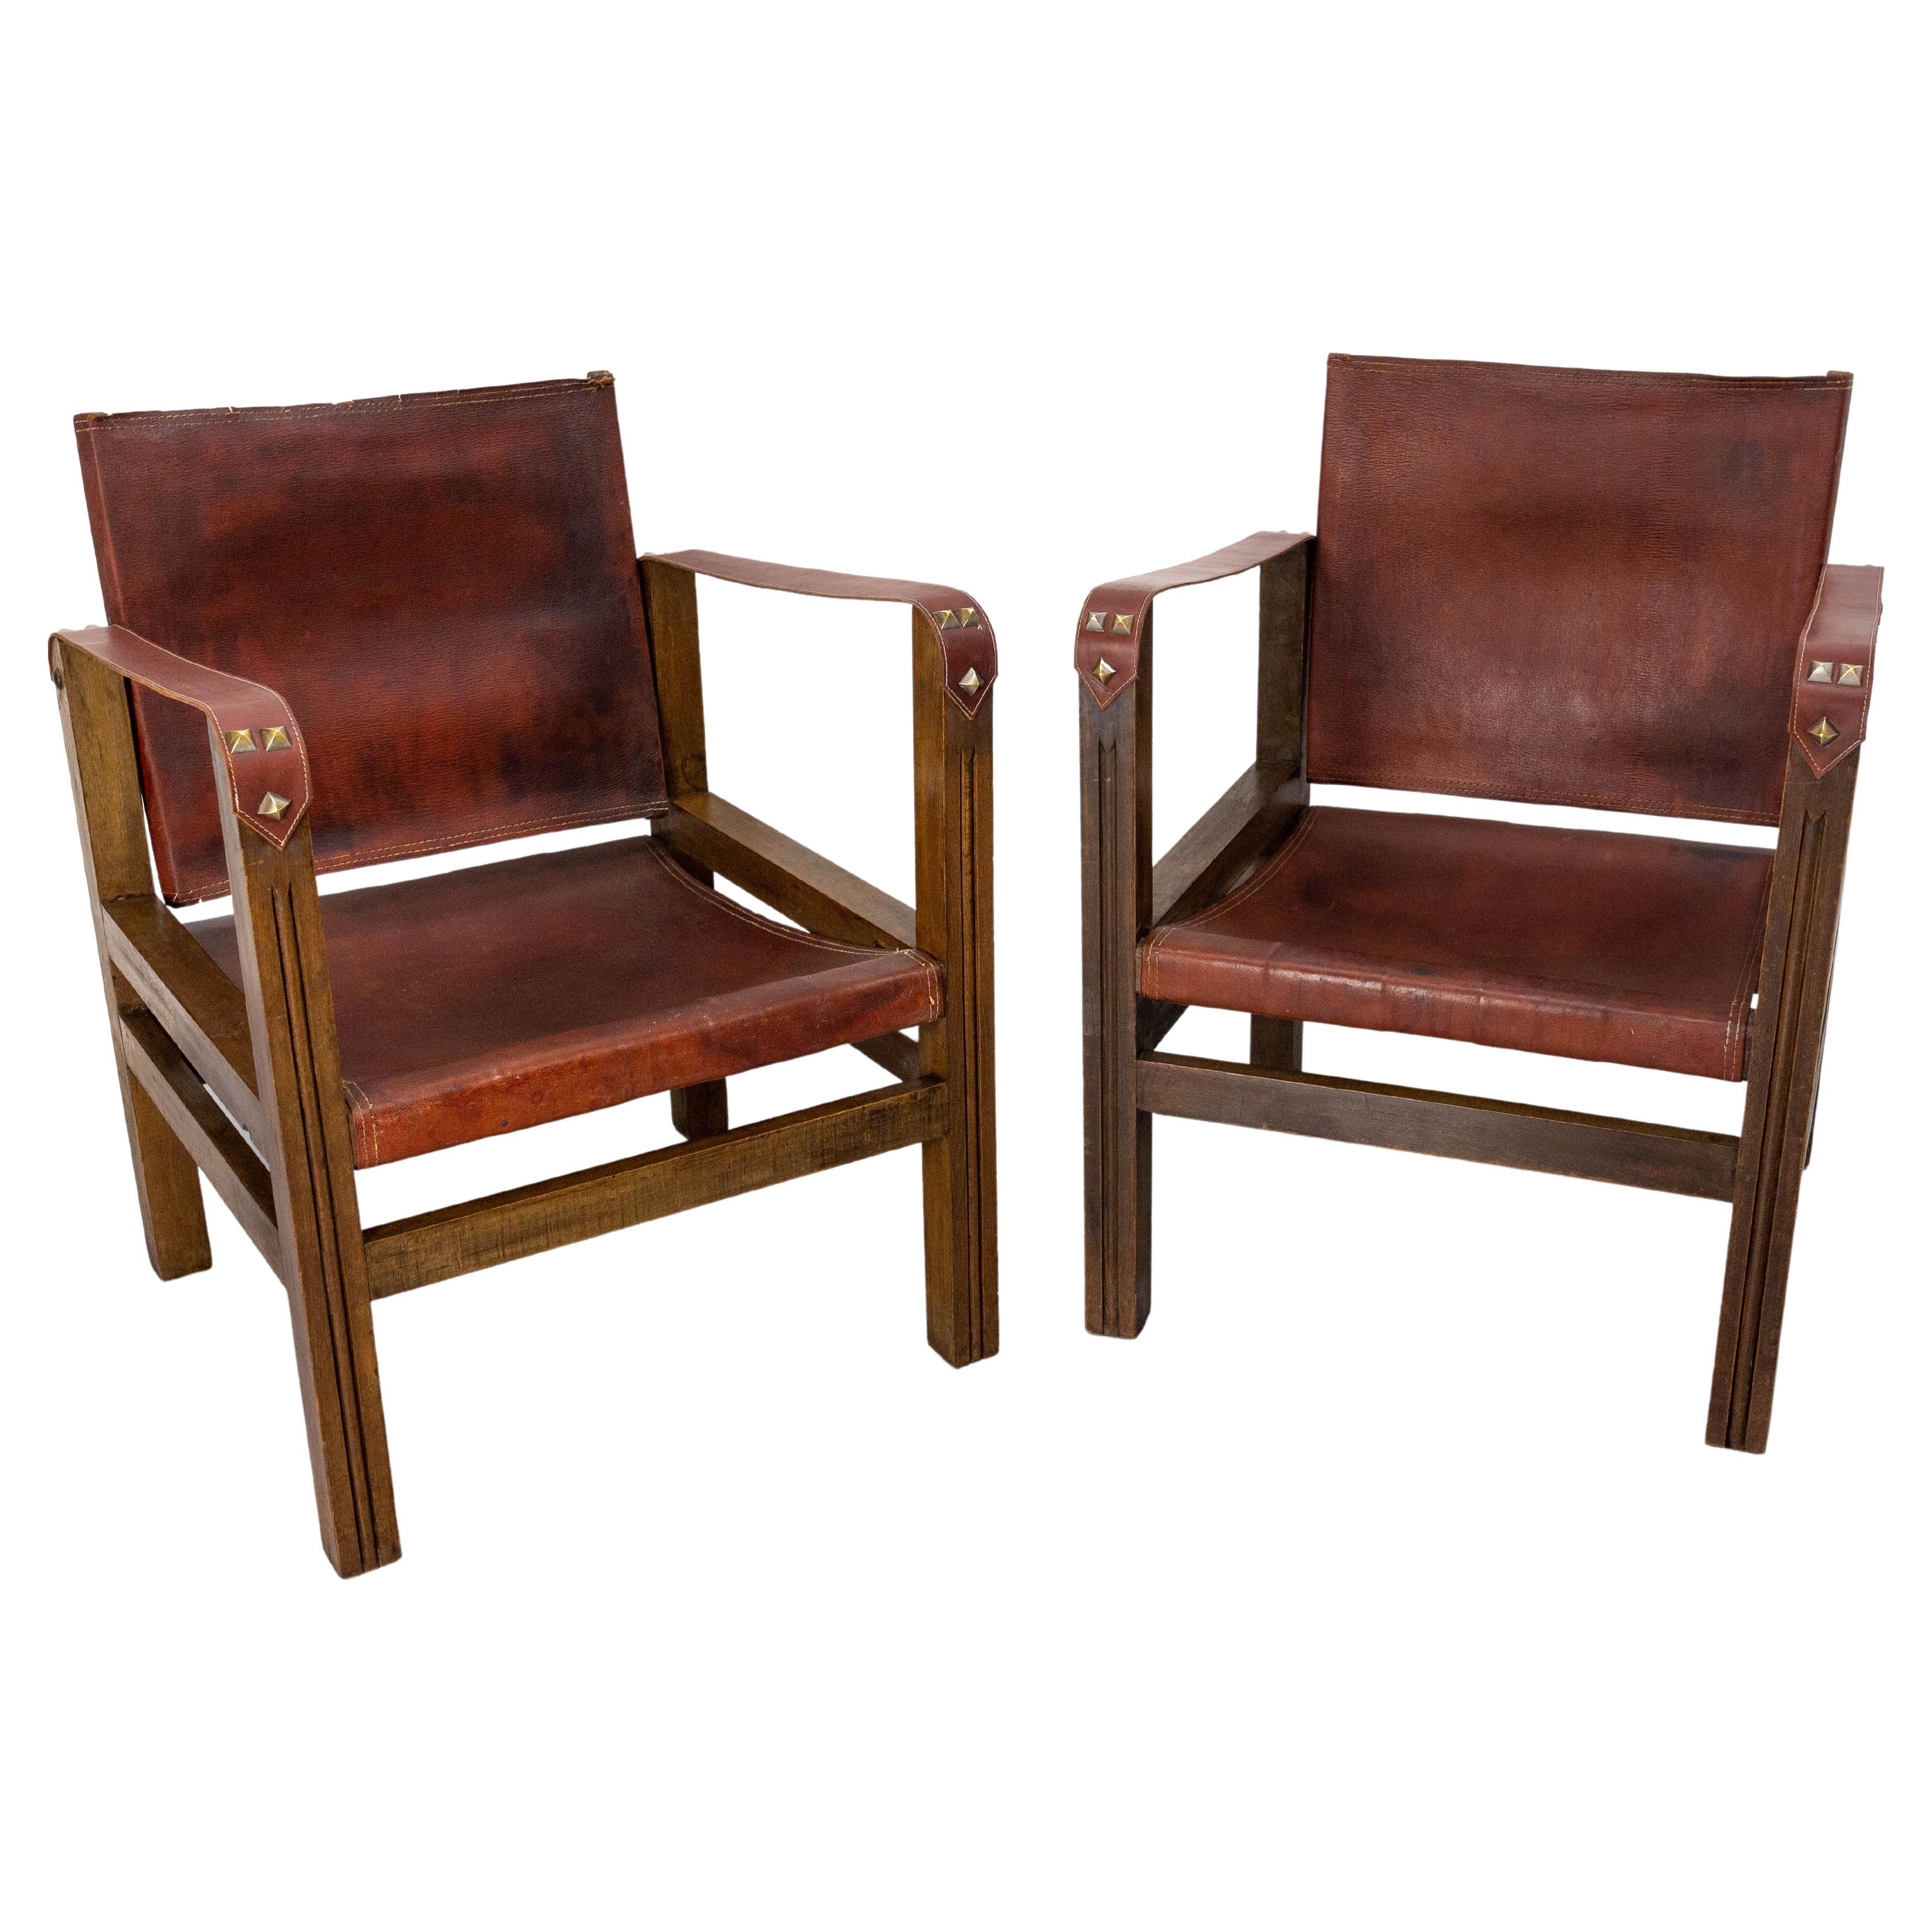 Paire de fauteuils ouverts en cuir français et hêtre de style safari, vers 1940